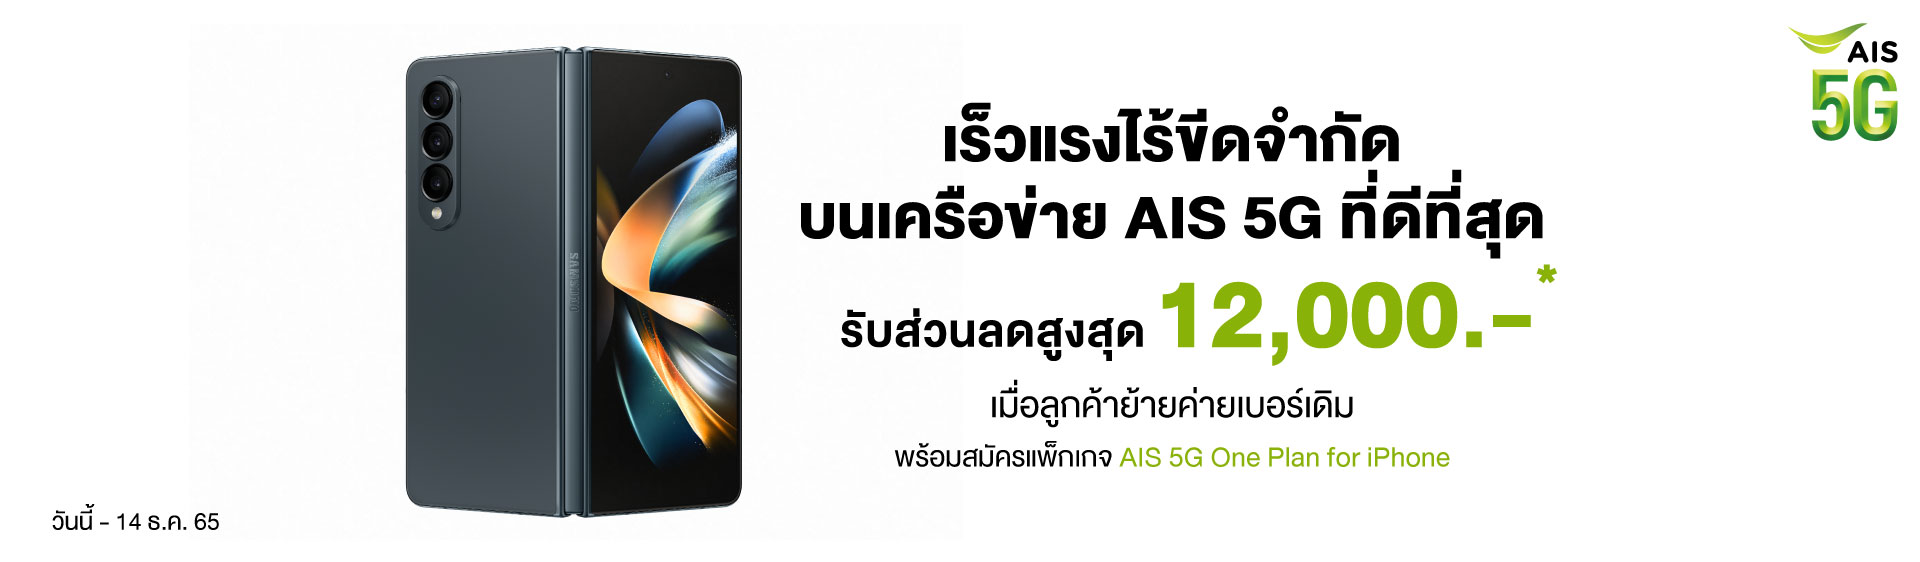 Dotlife AIS 5G : Samsung Promotion